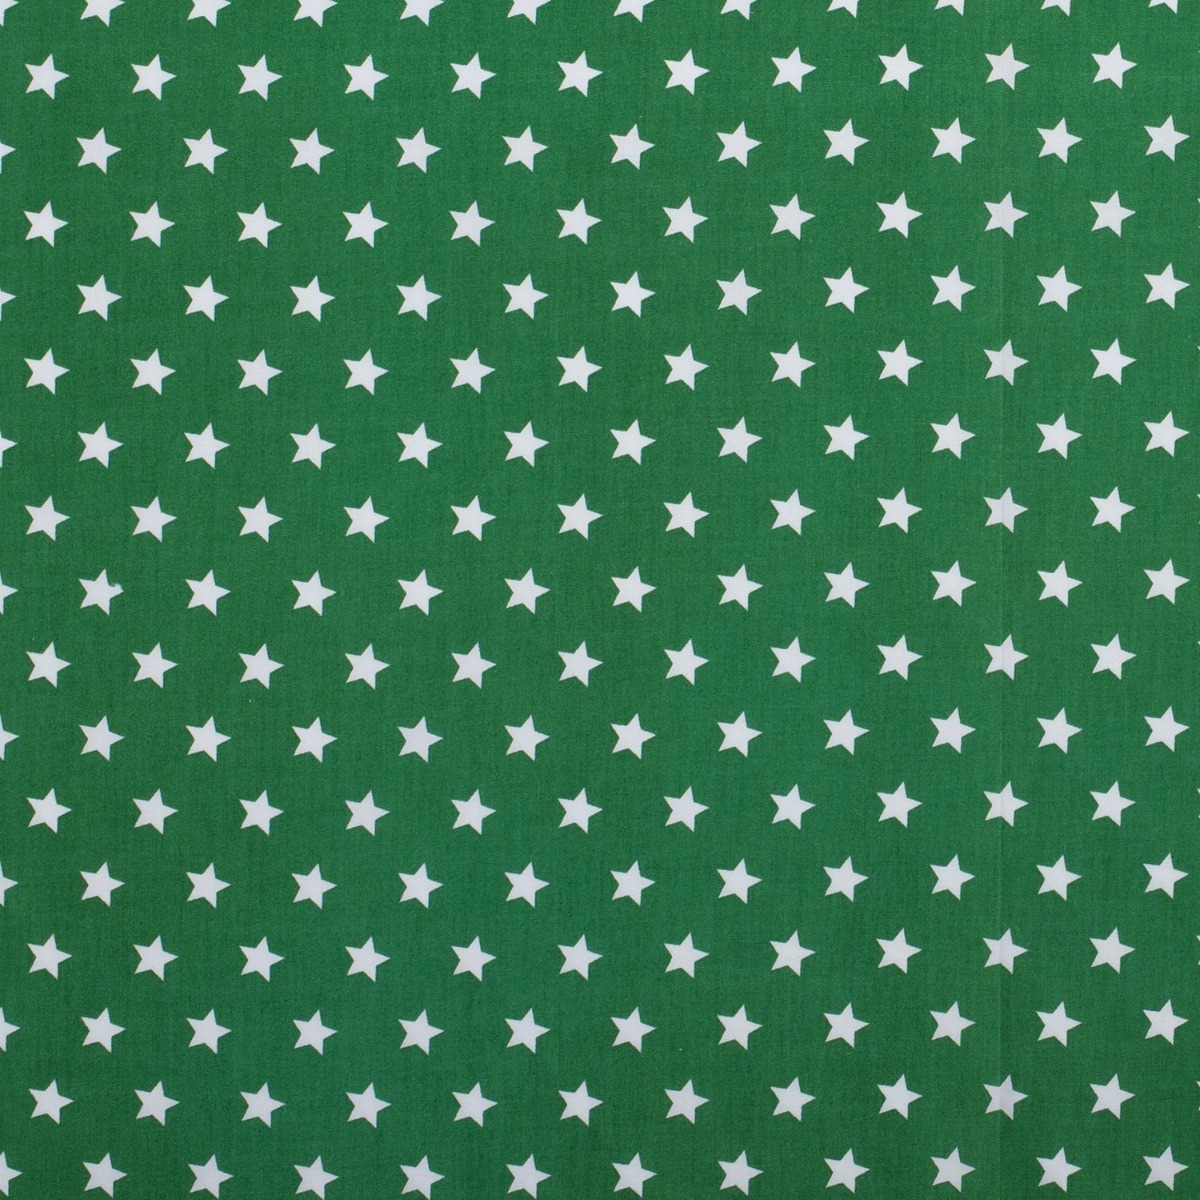 Baumwolle Sterne Standard Grün